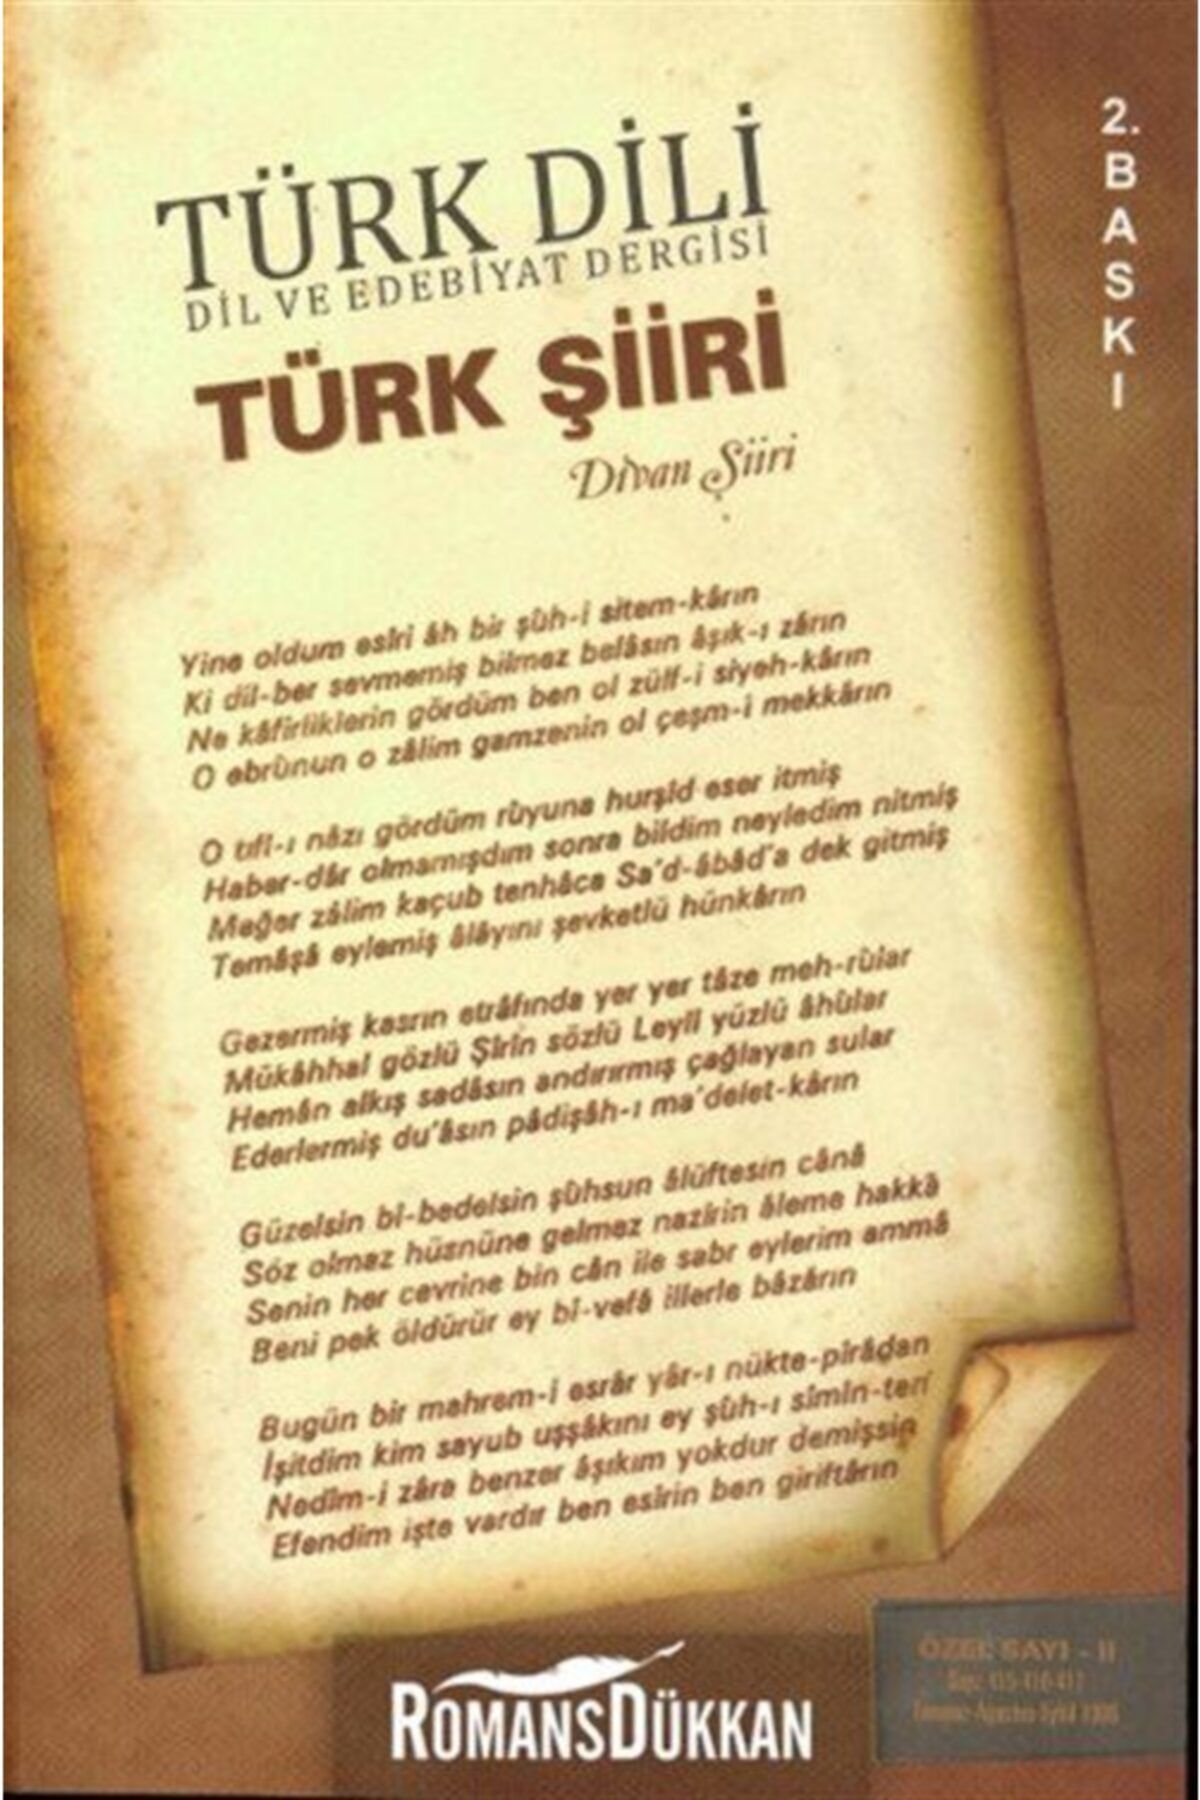 Türk Dil Kurumu Yayınları Türk Dili Dil Ve Edebiyat Dergisi Türk Şiiri - Divan Şiiri